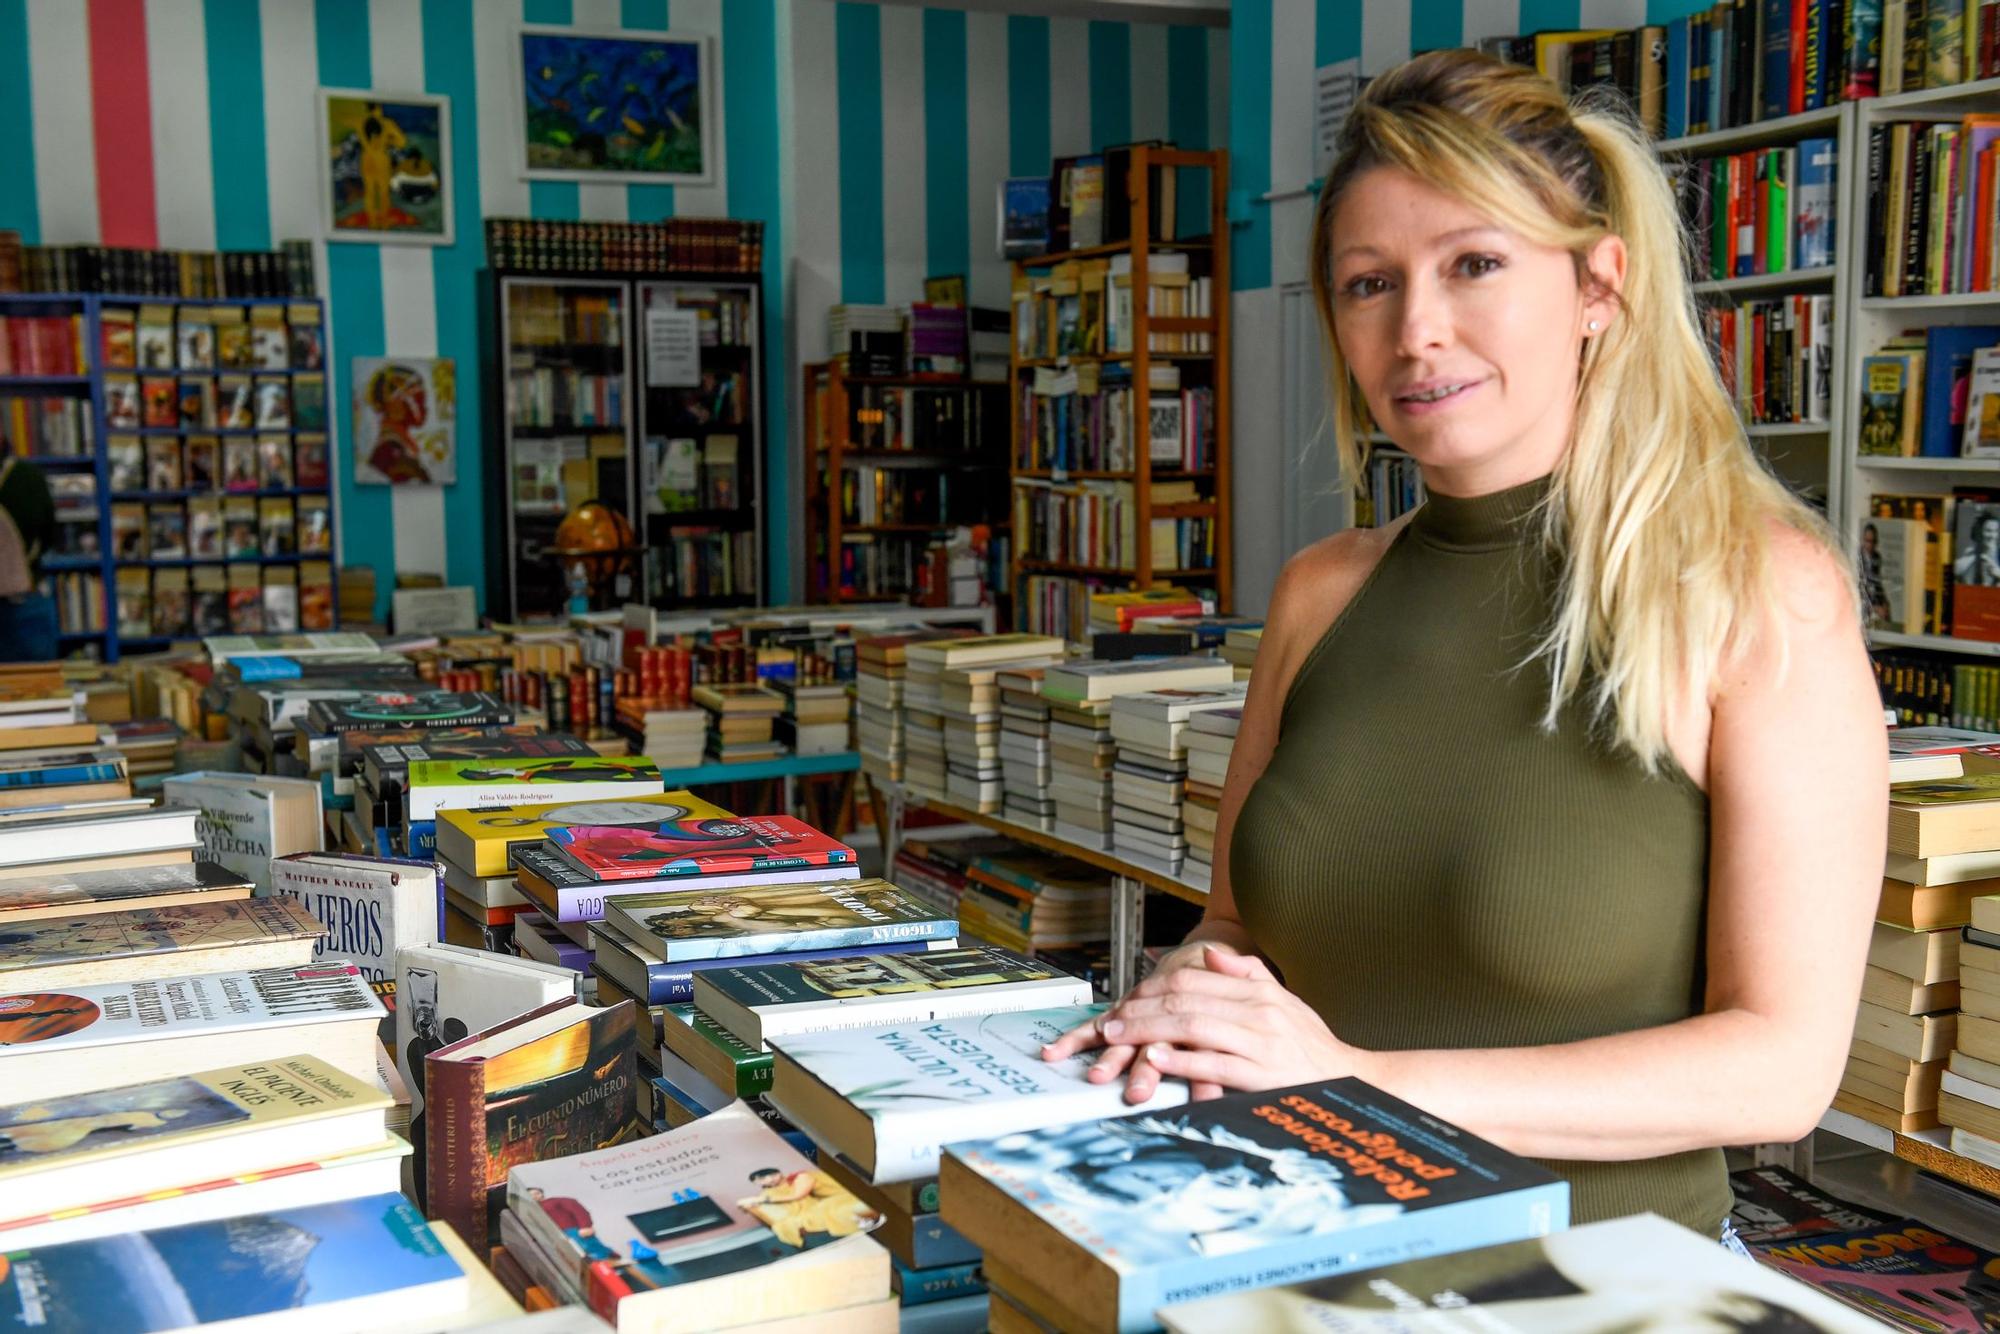 Cierra una tienda de libros de ocasión en Santa Catalina